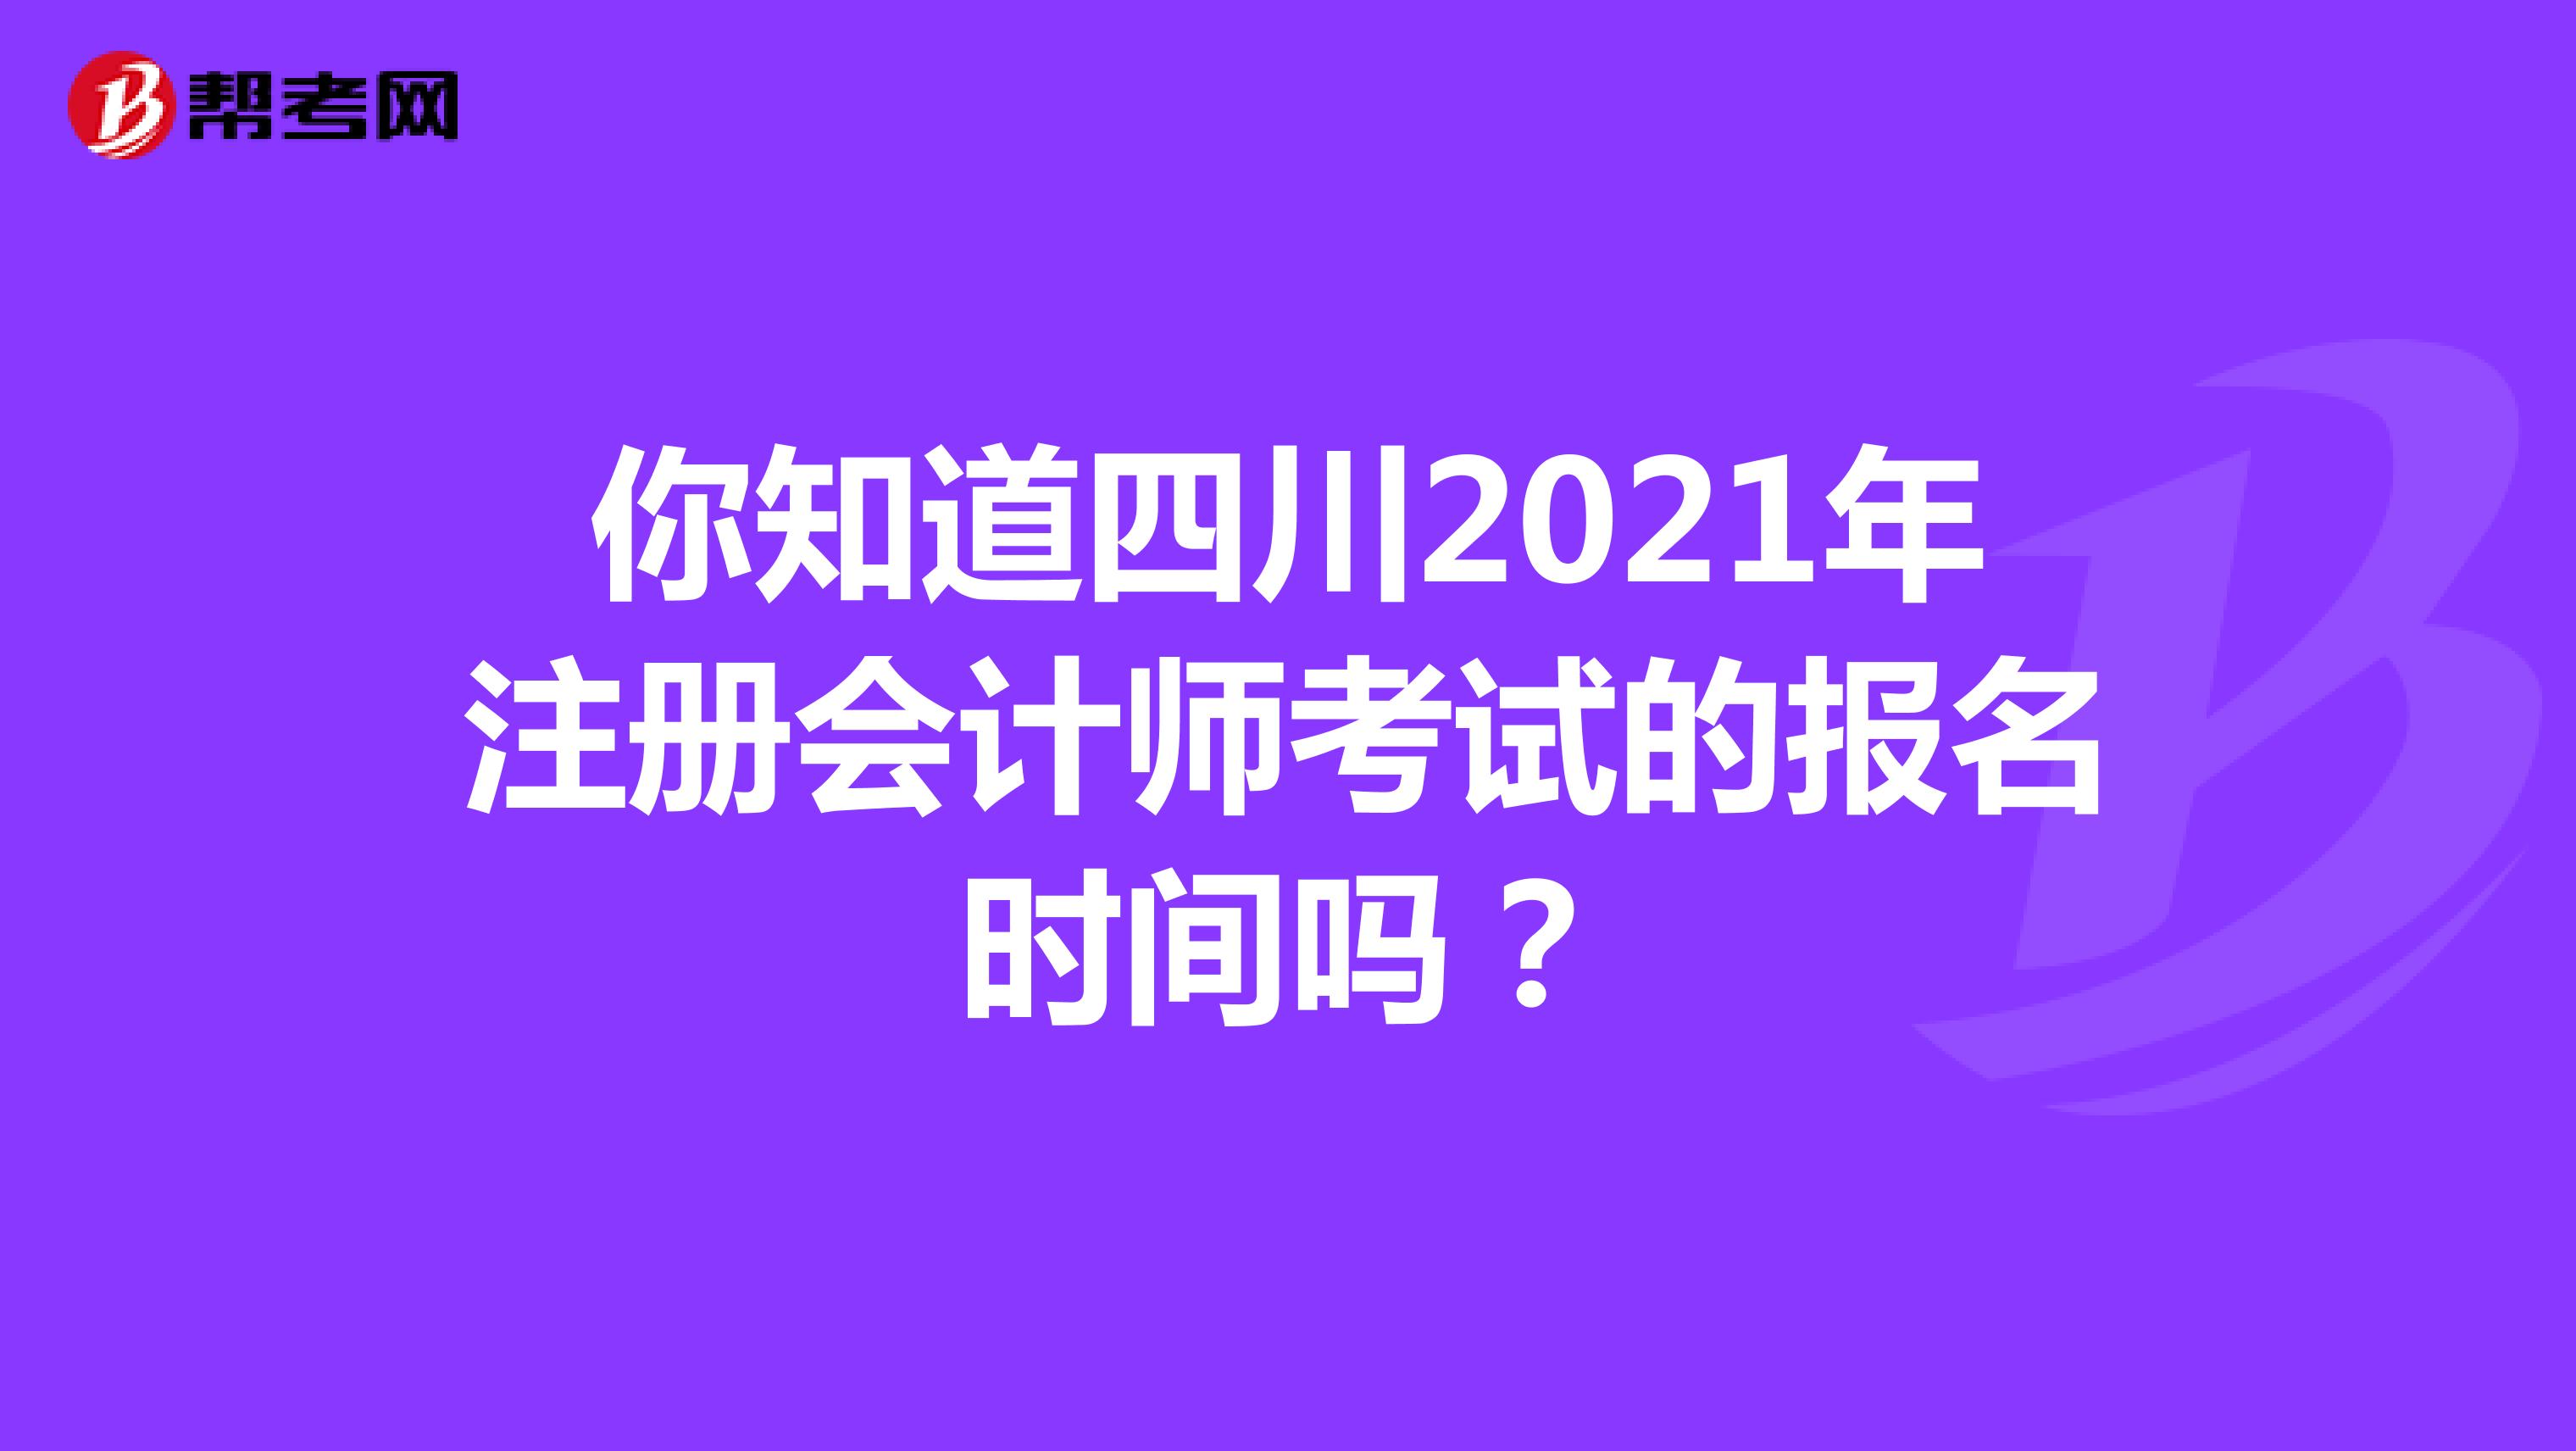 你知道四川省2021年注册会计师考试的报名时间吗？